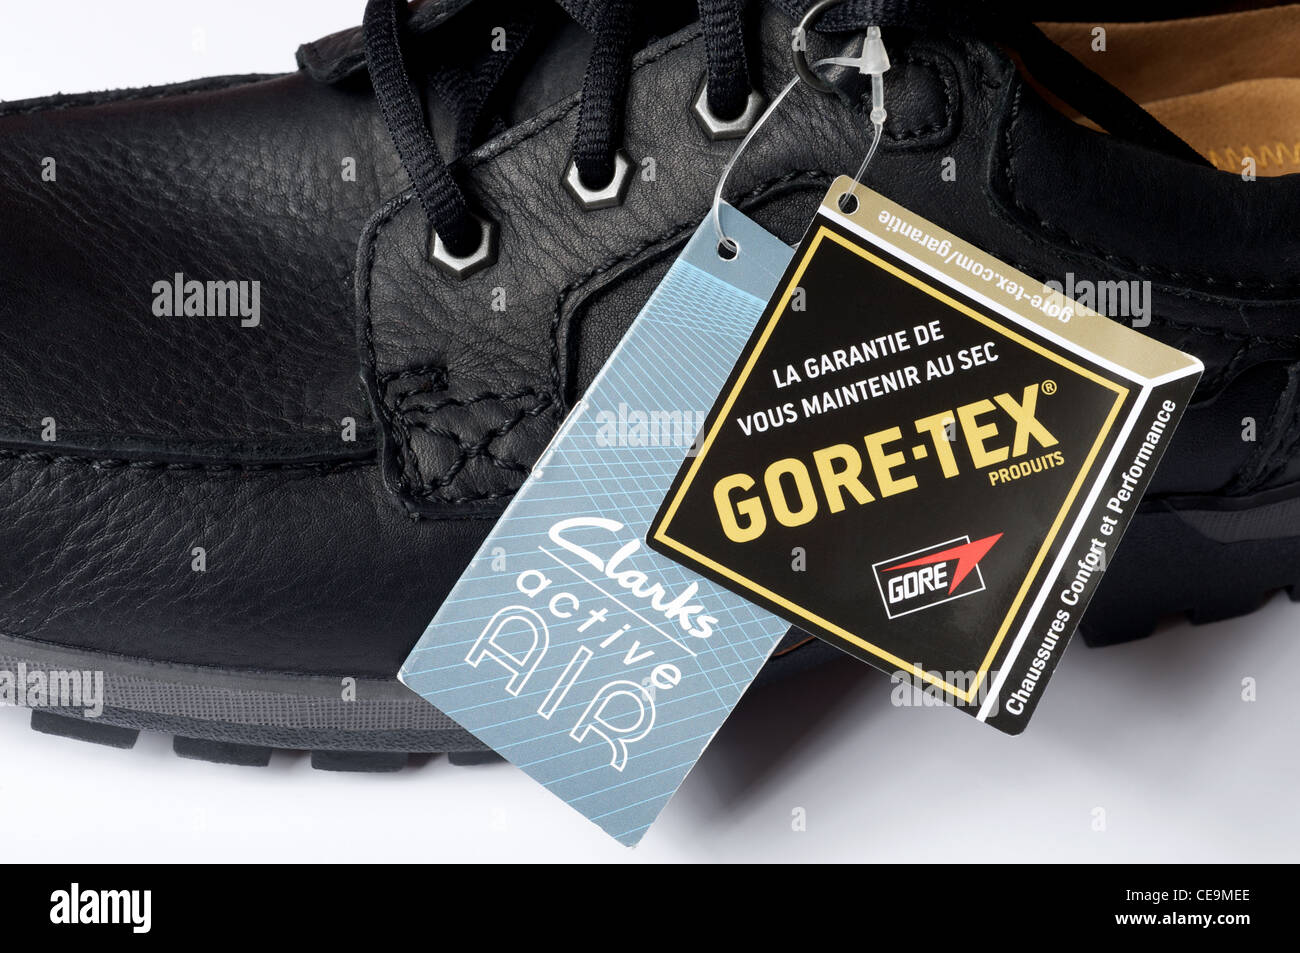 ZAPATO GORE TEX KEPLER GTR15 - Zapatos GoreTex de Mujer y Hombre